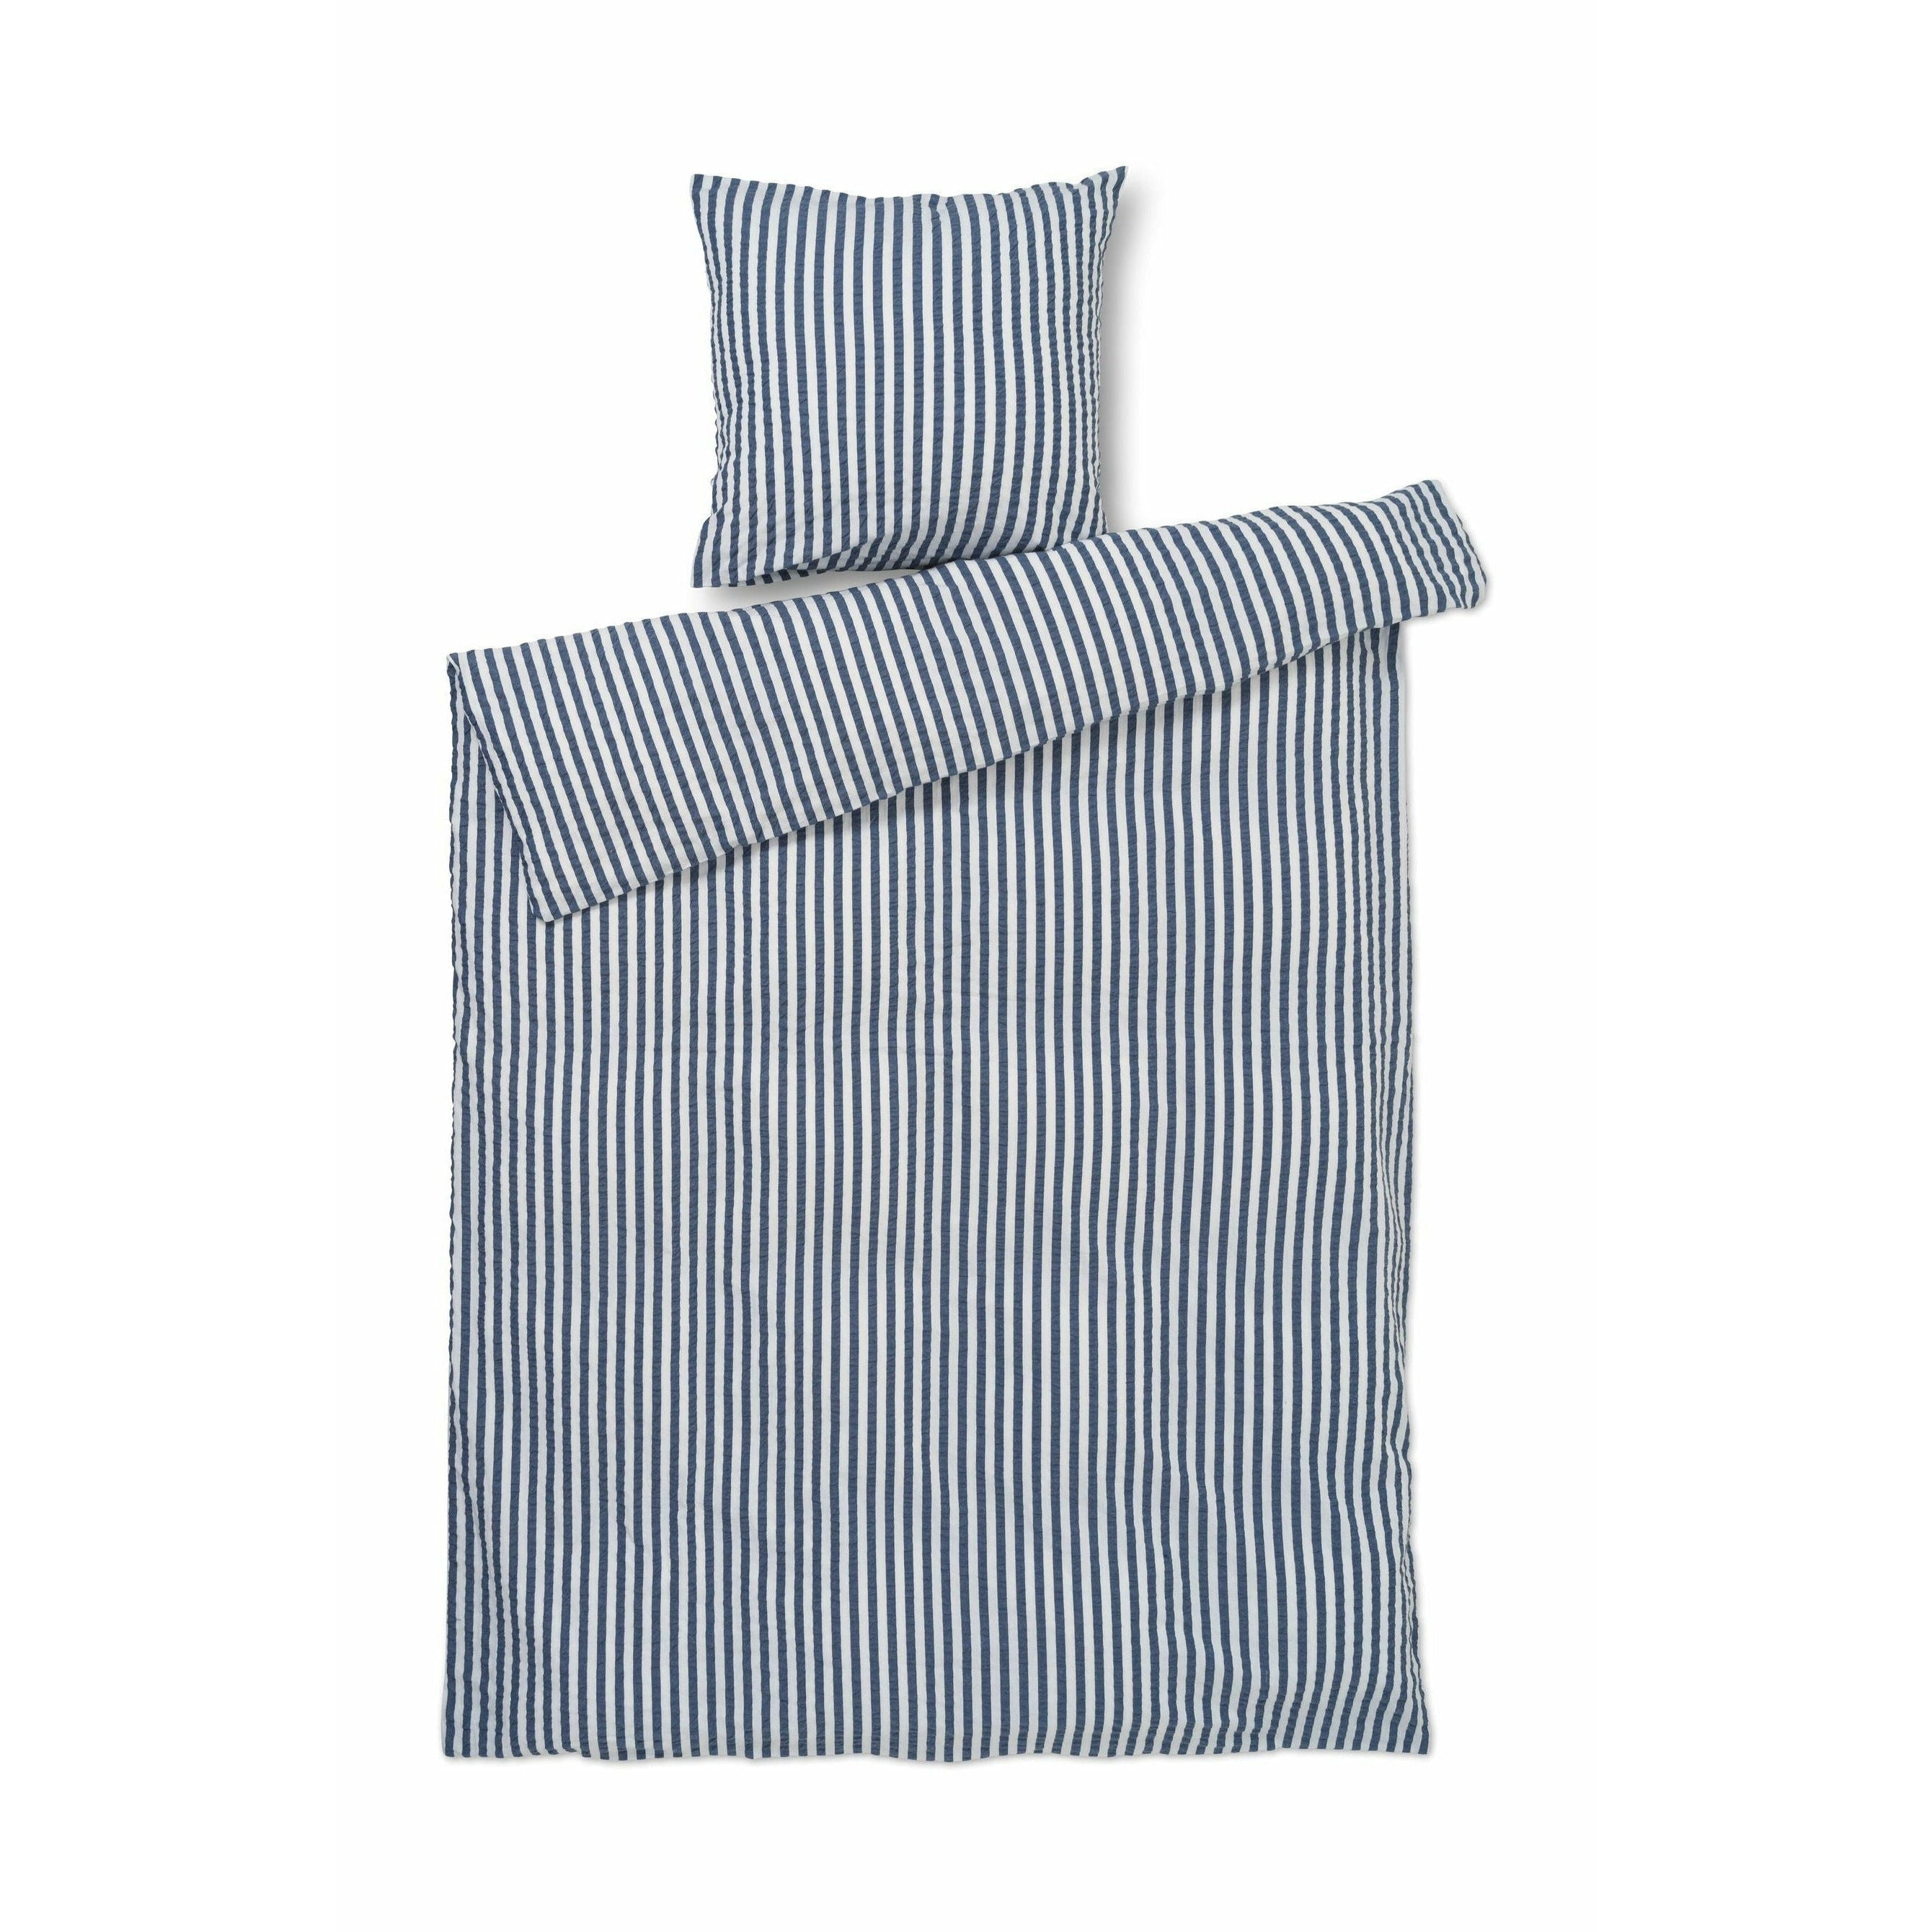 JUNA Bæk y Bølge Lines Bed Linen 140x220 cm, azul oscuro/blanco